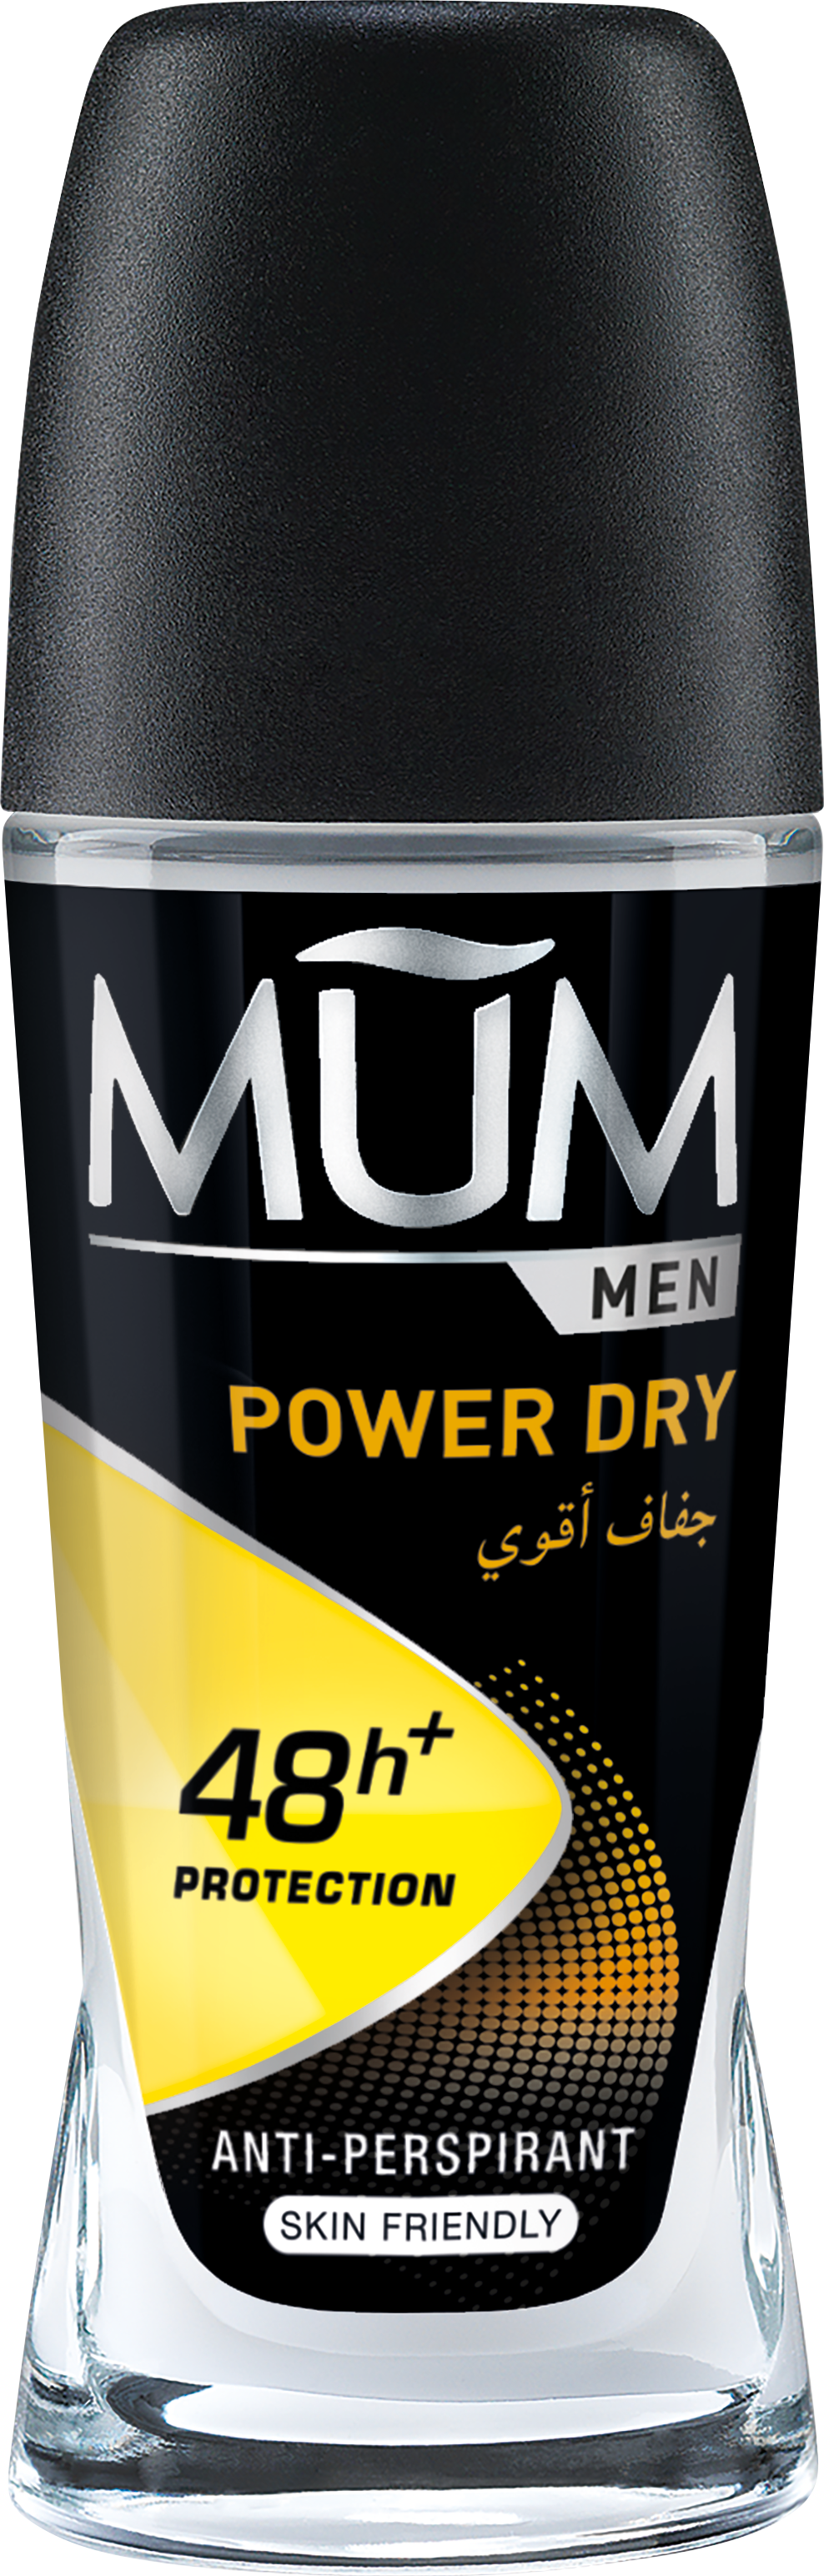 Men Power Dry